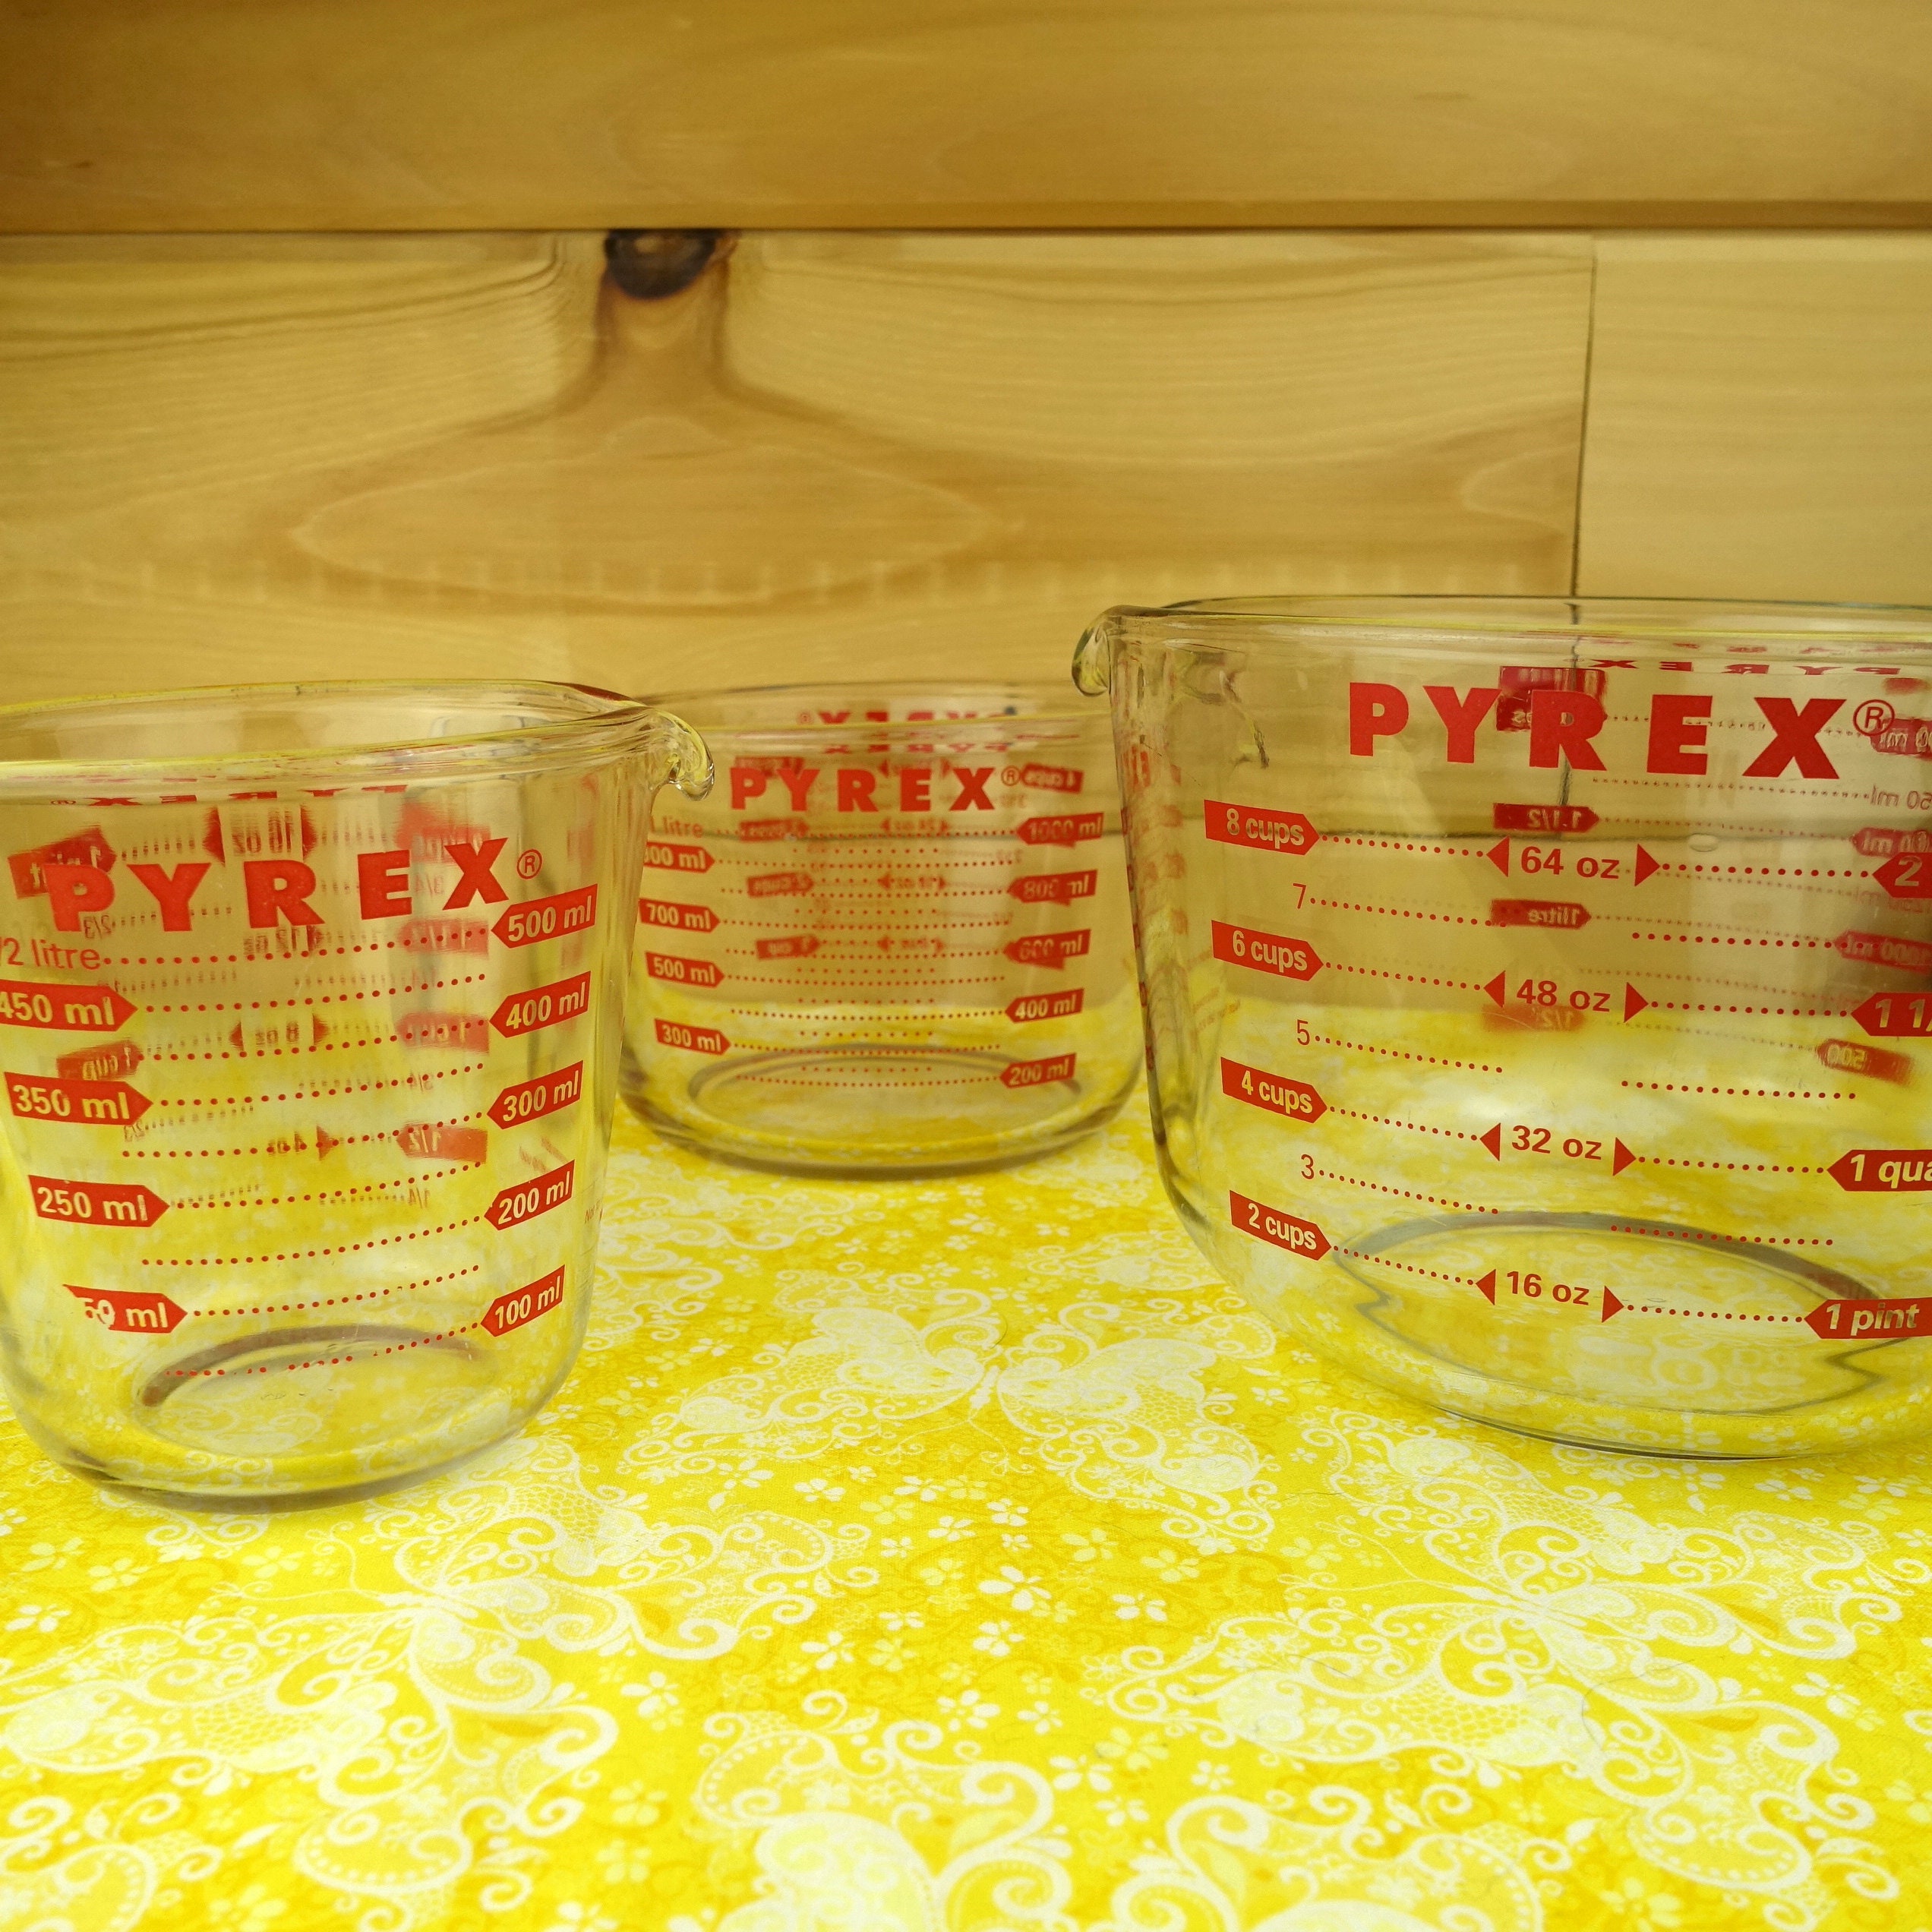 Measuring cup Pyrex, glass, 1 litre